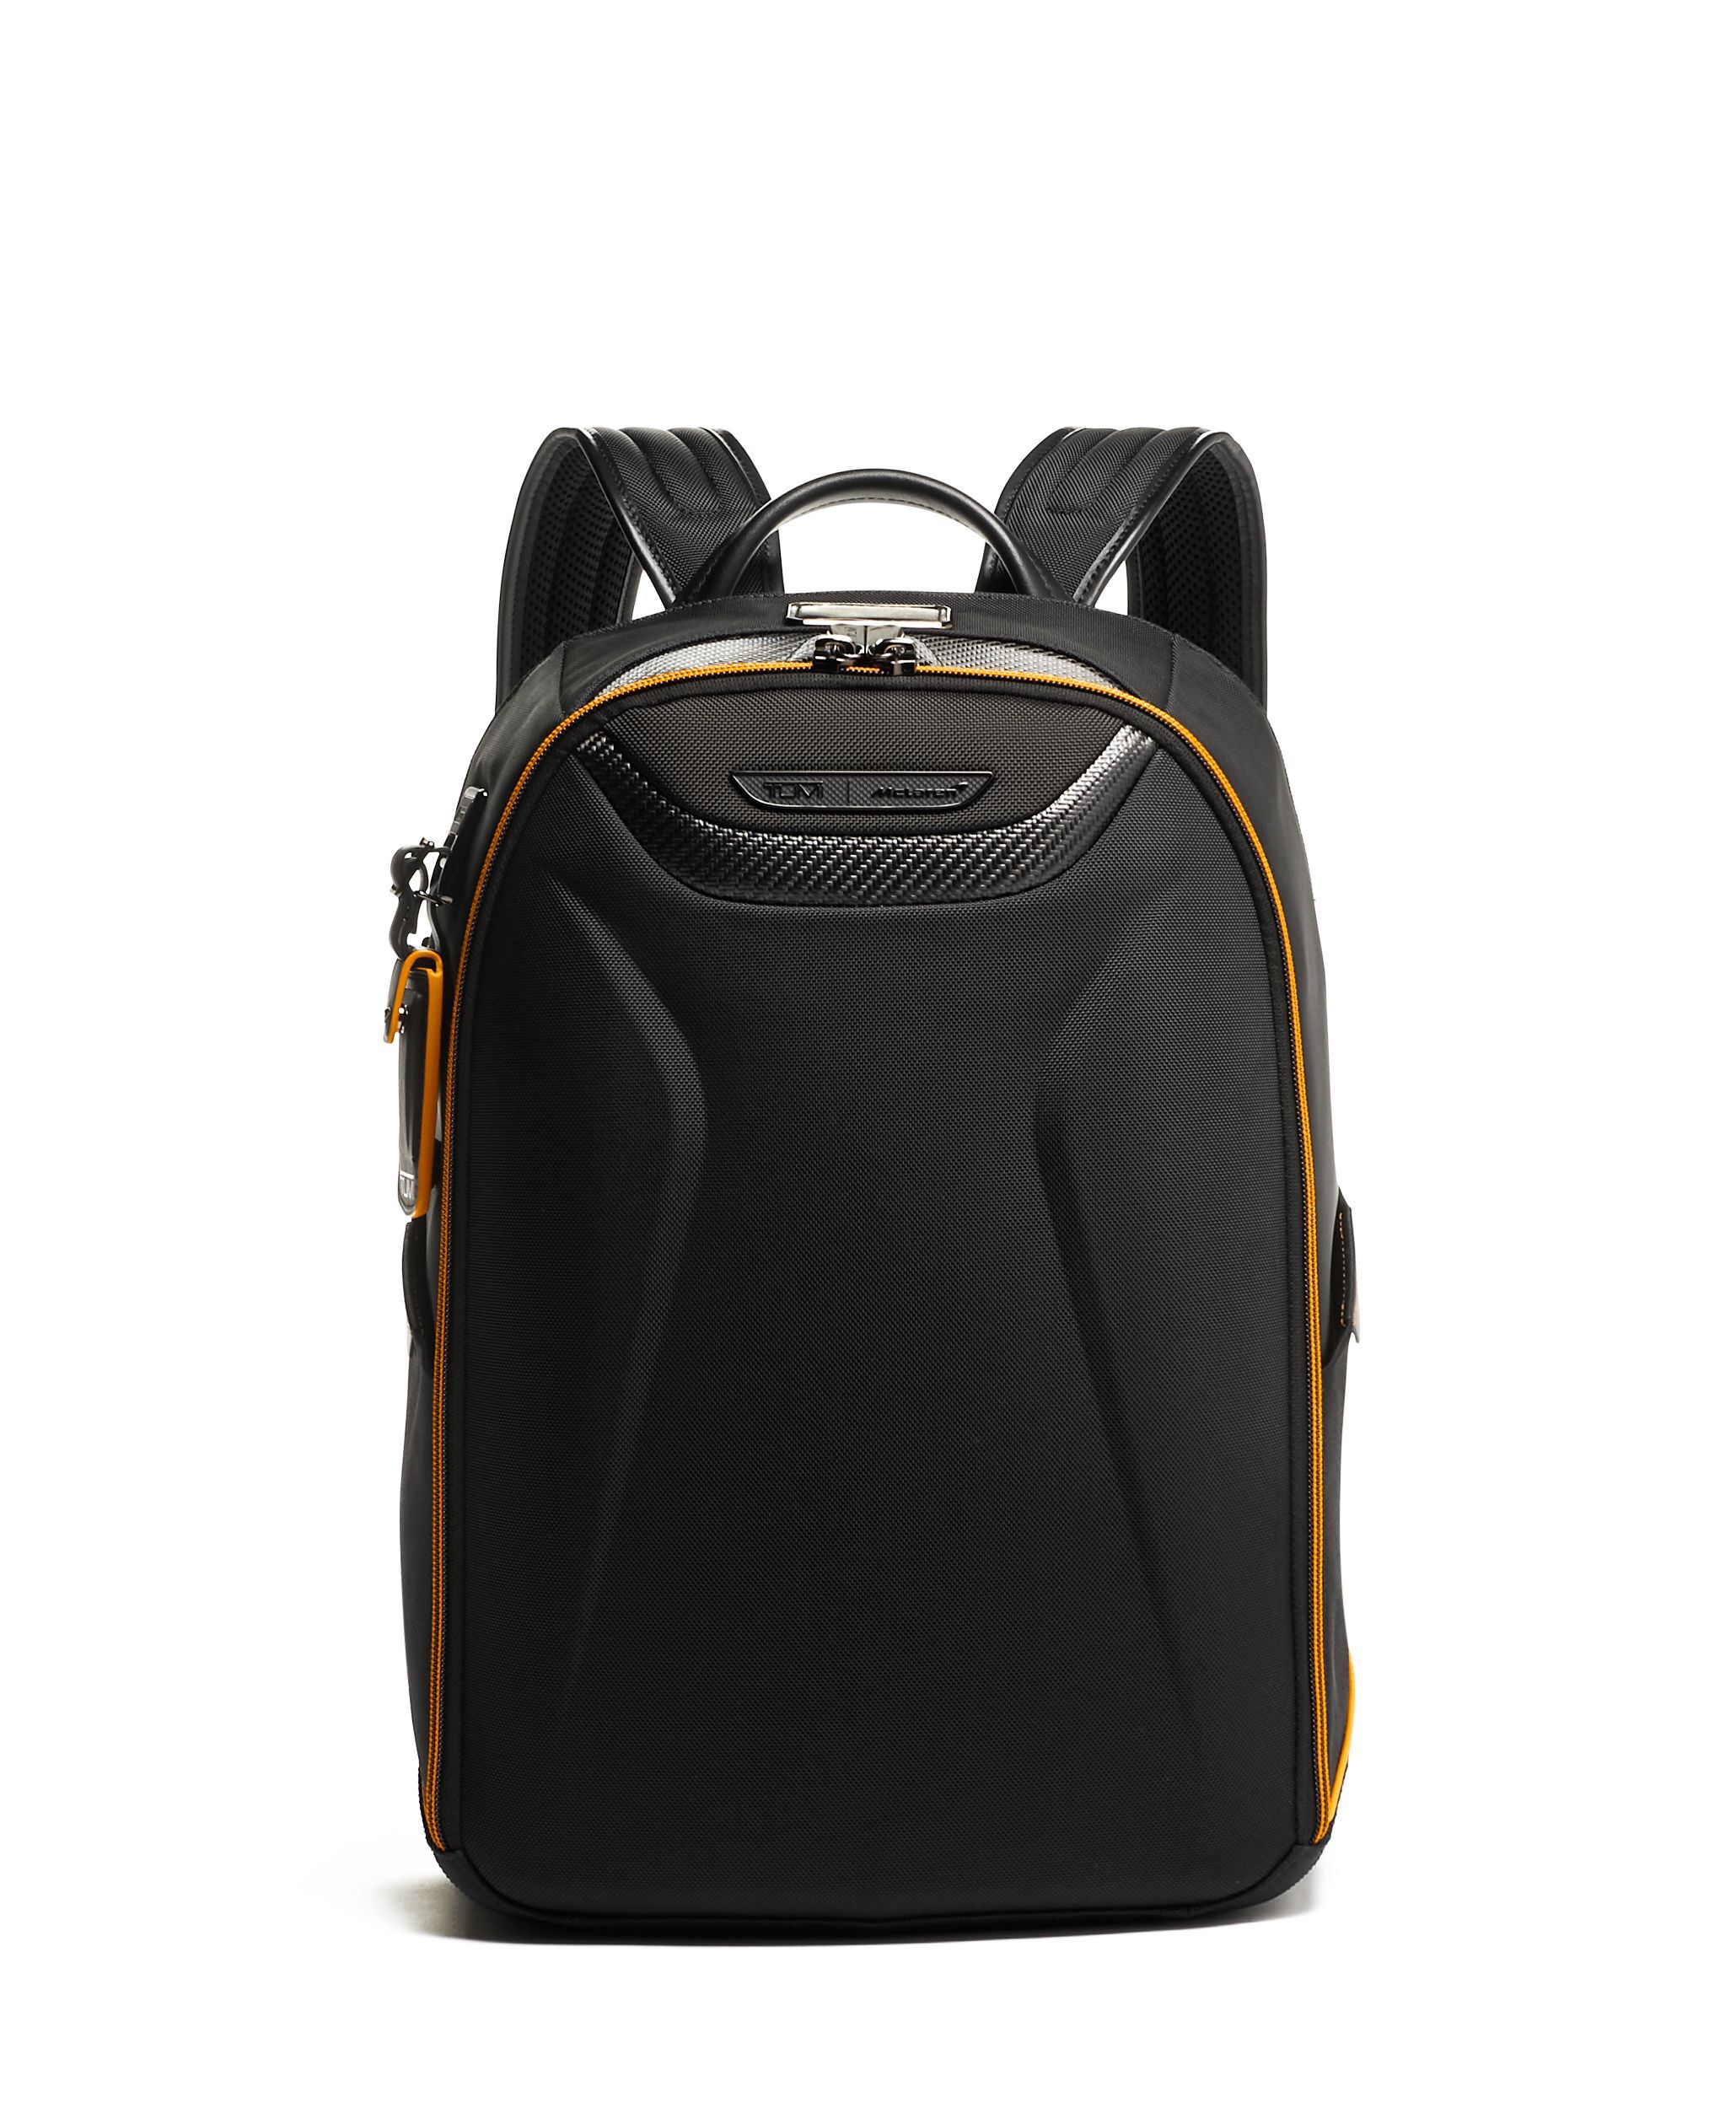 Tumi 15 inch Laptop Backpack Black 71365  Price in India  Flipkartcom